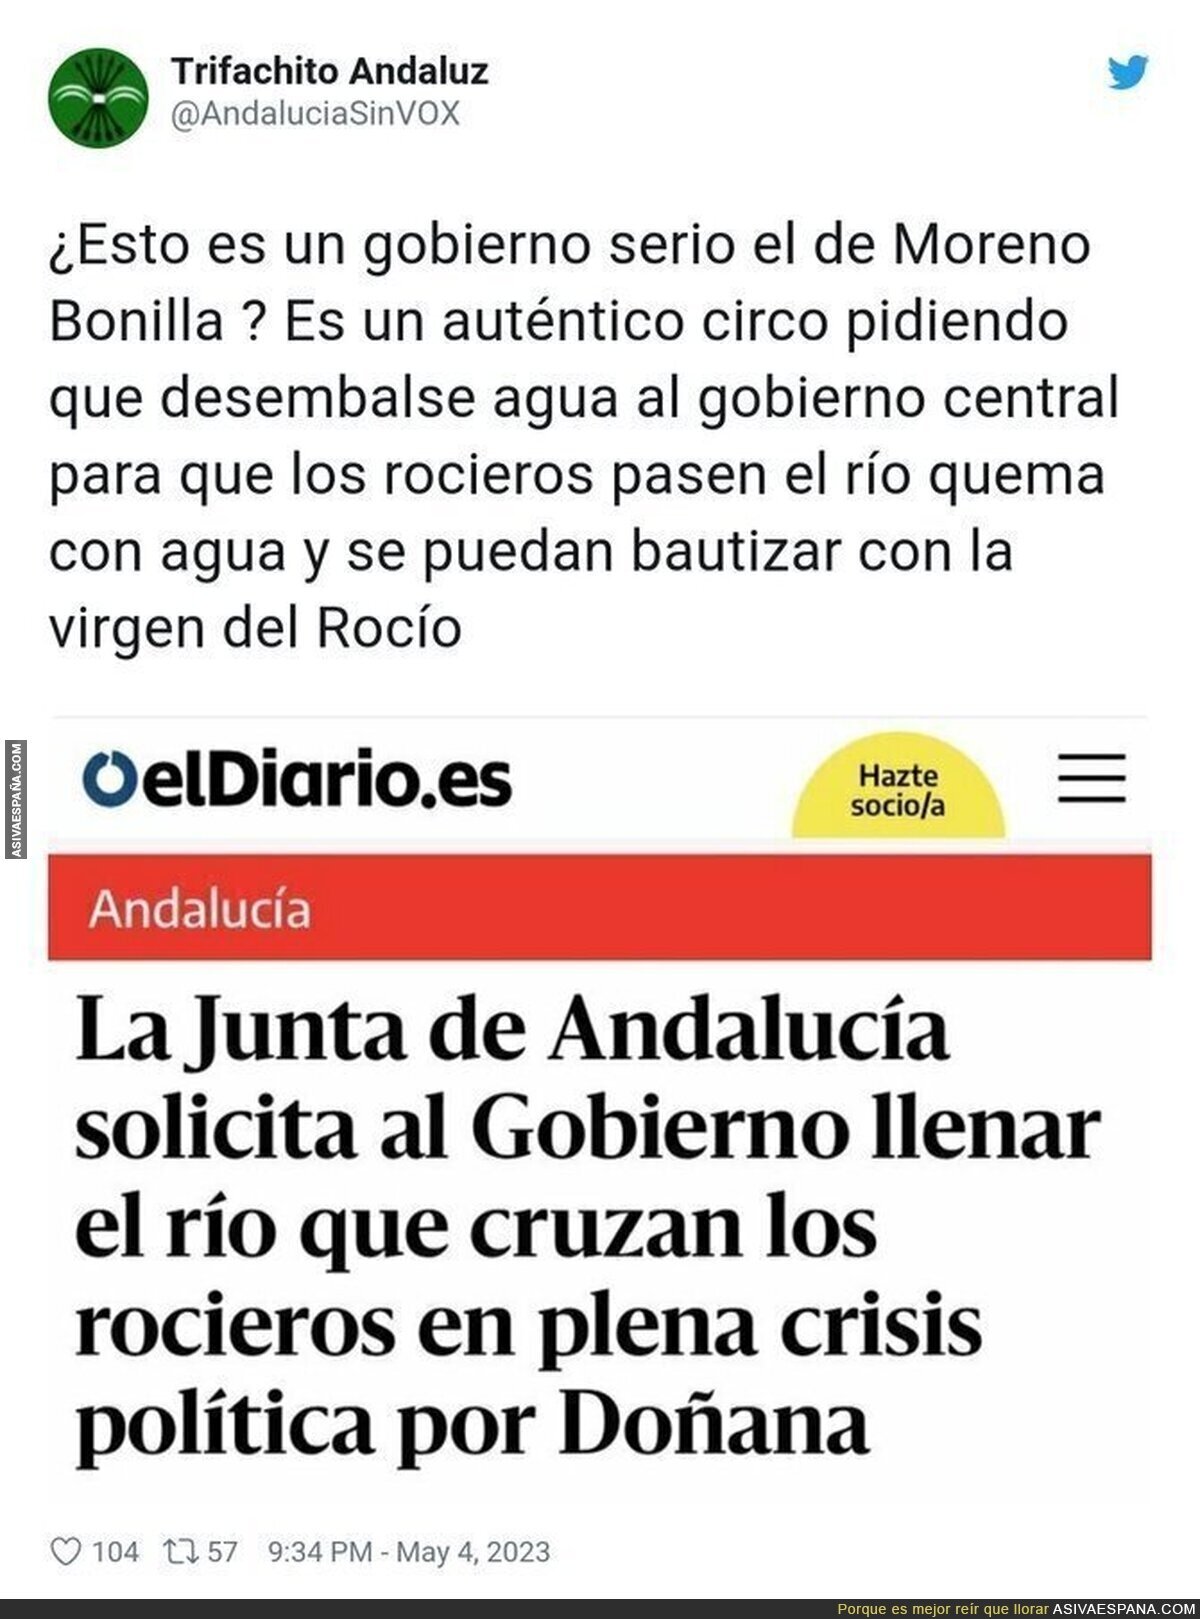 El despiporre lo de la Junta de Andalucía